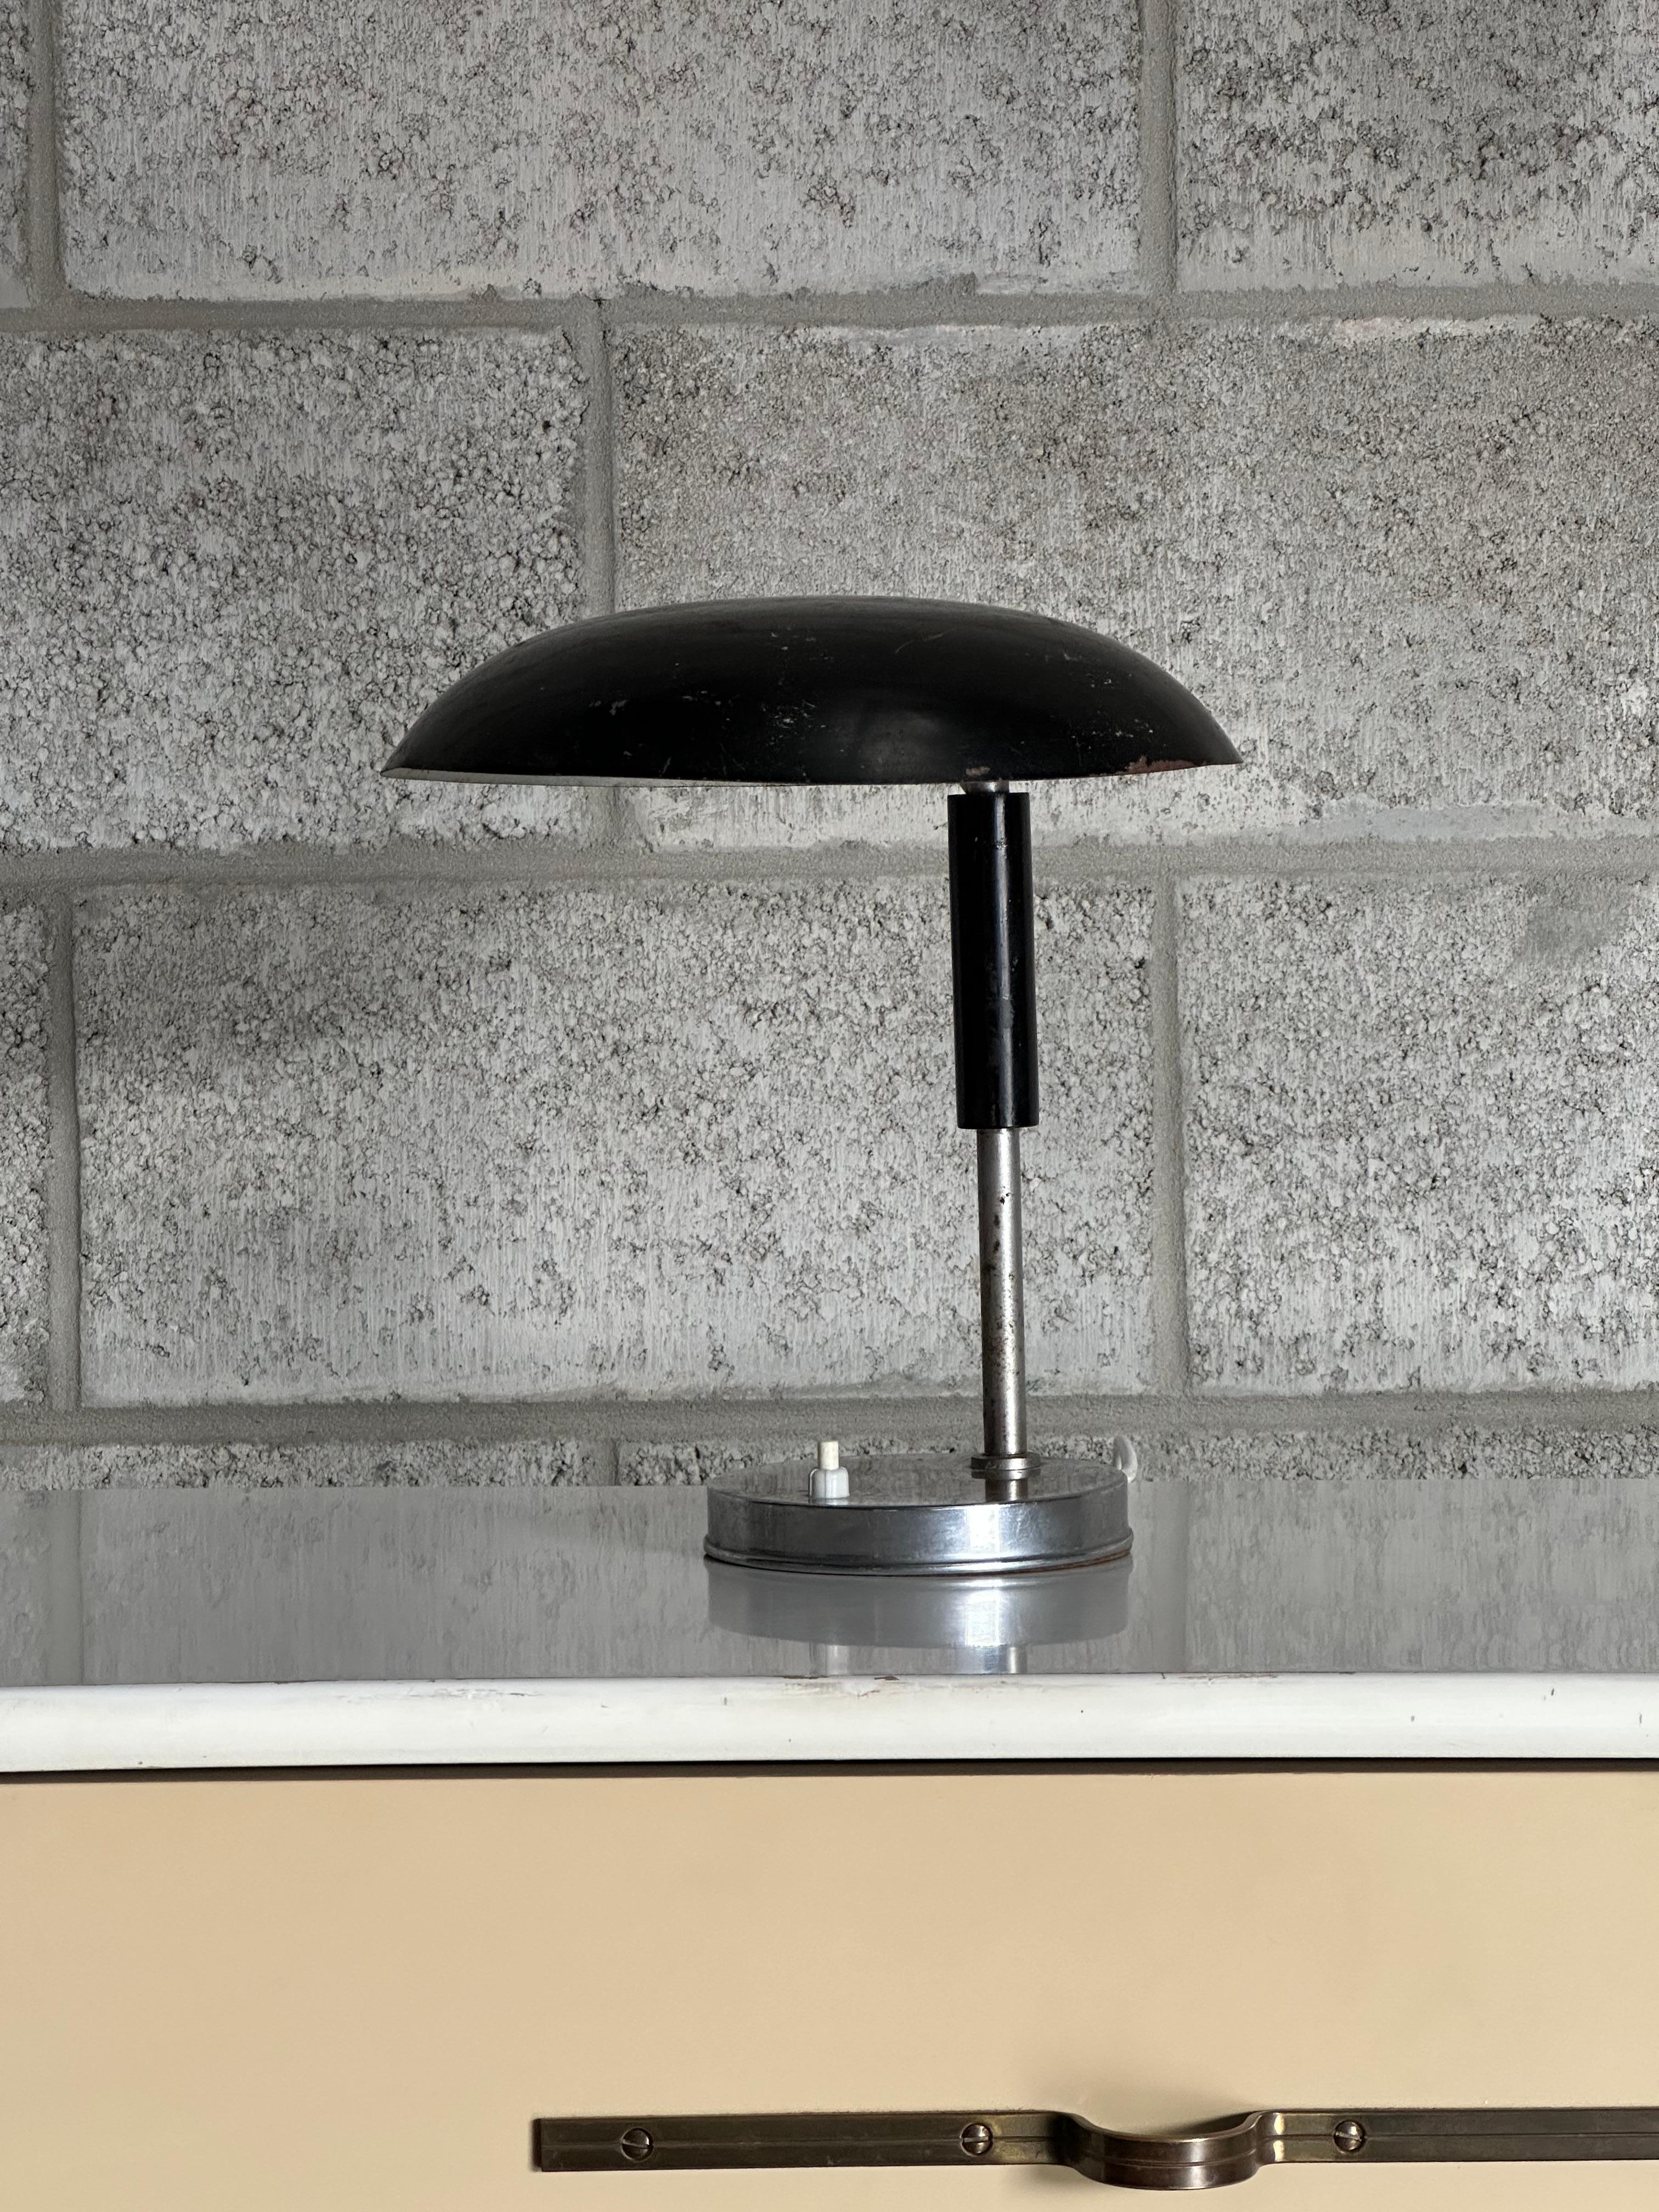 Magnifique lampe suédoise datant des années 1940, dans le style Bauhaus. Une forme superbe et un design minimaliste tout en étant fonctionnel. La lampe est attribuée à Harald Notini